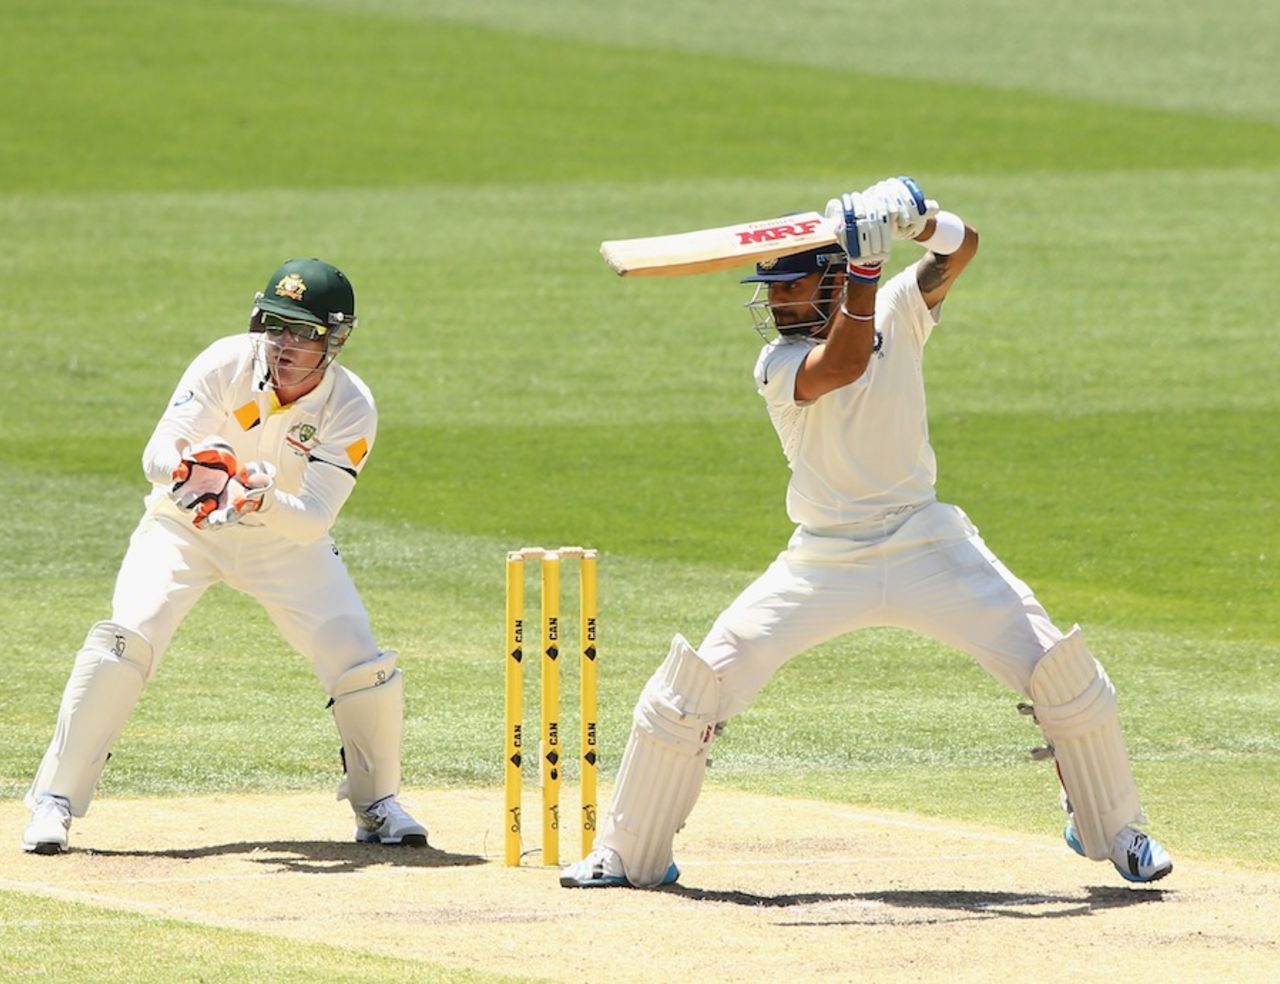 Virat Kohli plays through point, Australia v India, 1st Test, Adelaide, 3rd day, December 11, 2014